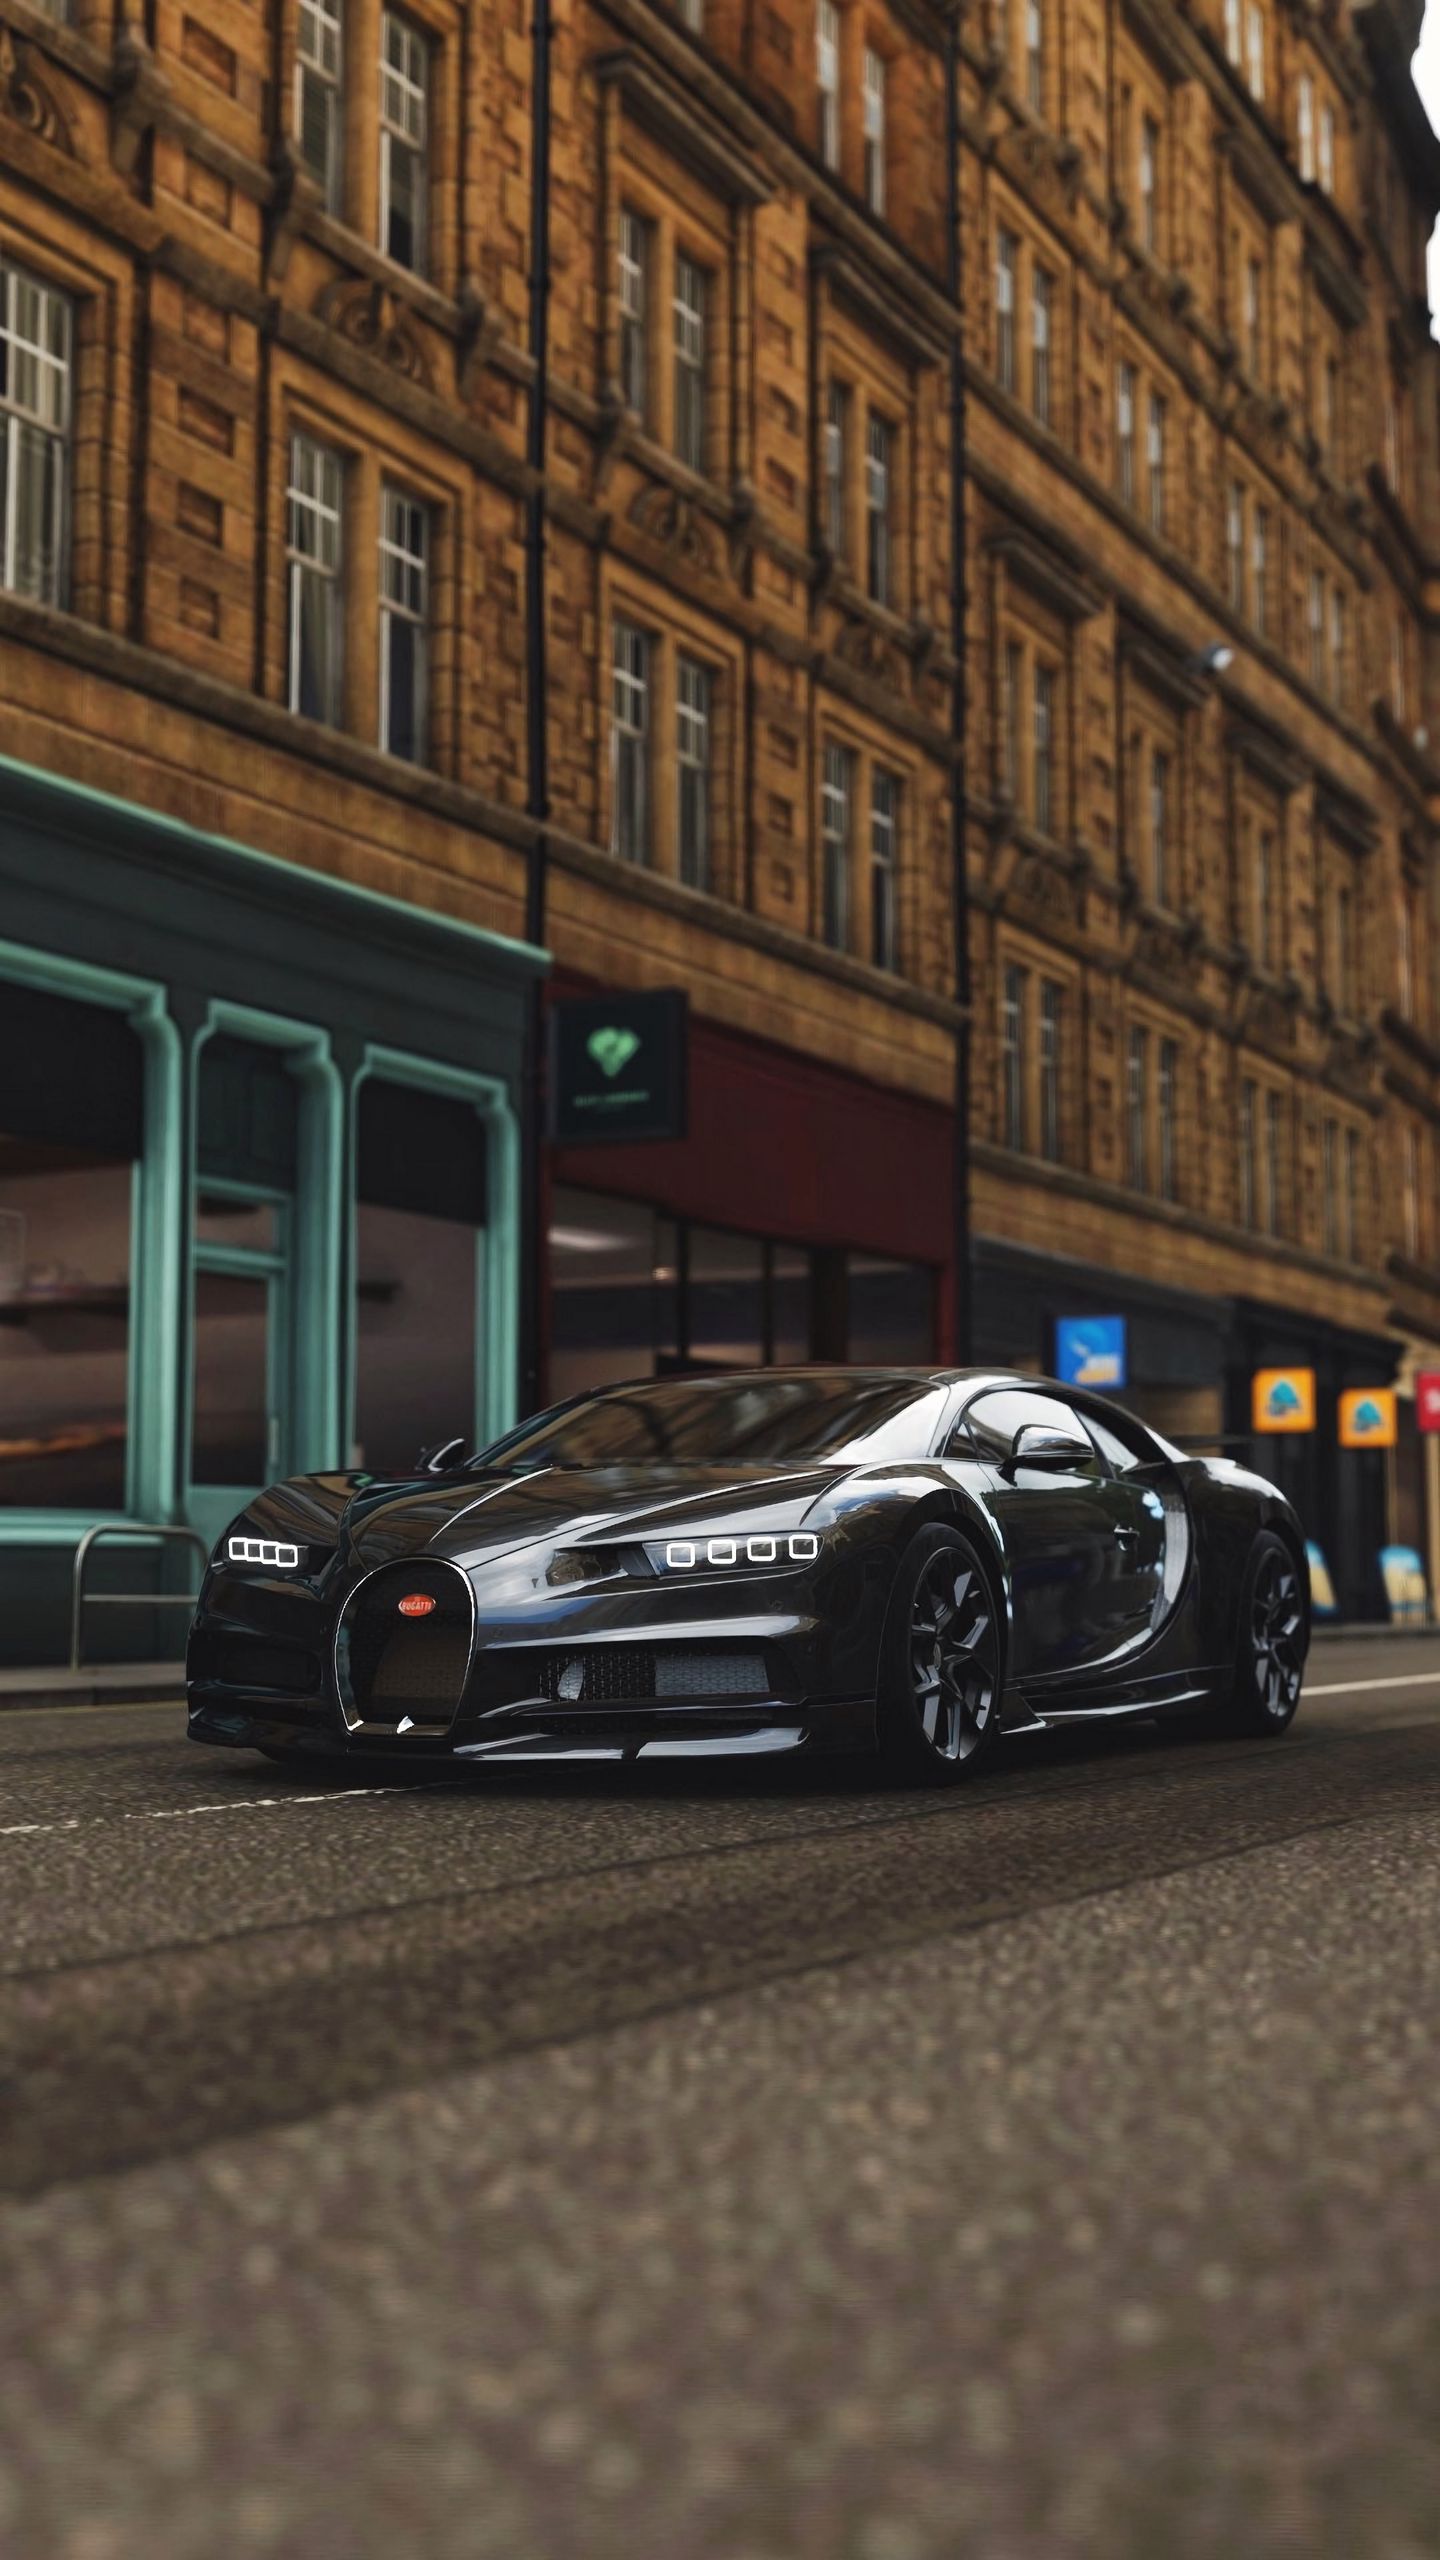 Bugatti Chiron là một trong những siêu xe đỉnh cao nhất trên thế giới. Hãy xem hình ảnh để ngắm nhìn vẻ đẹp hoàn hảo của chiếc xe này.